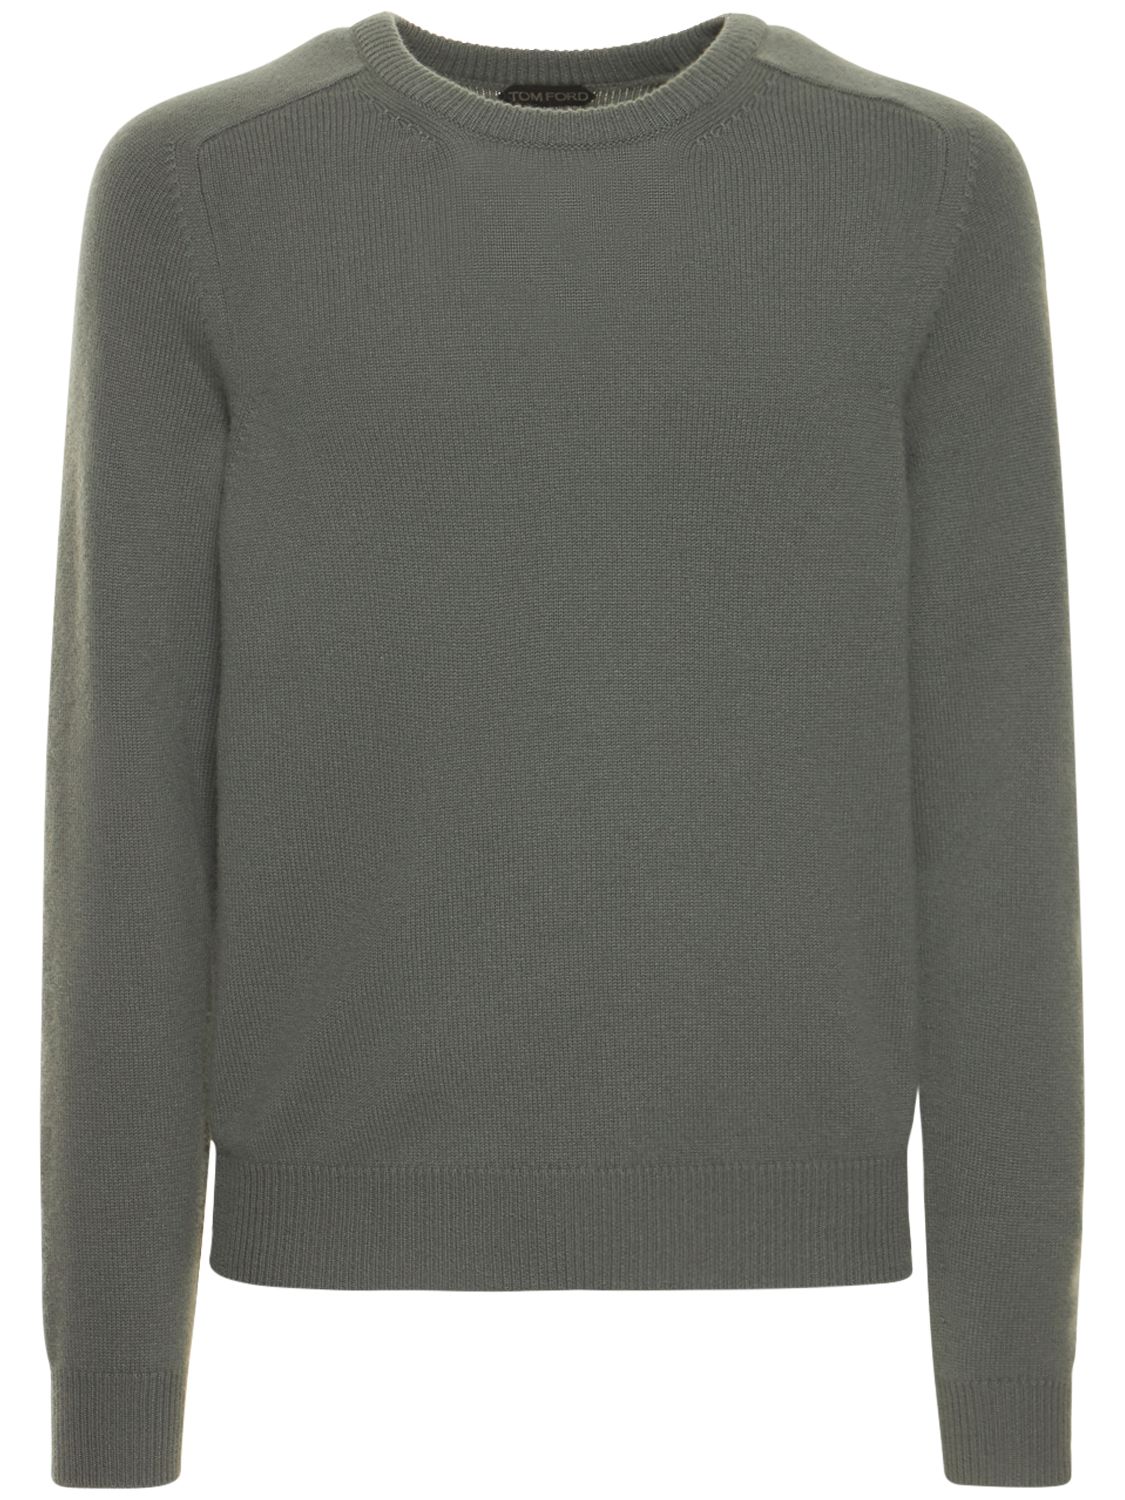 Cashmere L/s Crewneck Sweater